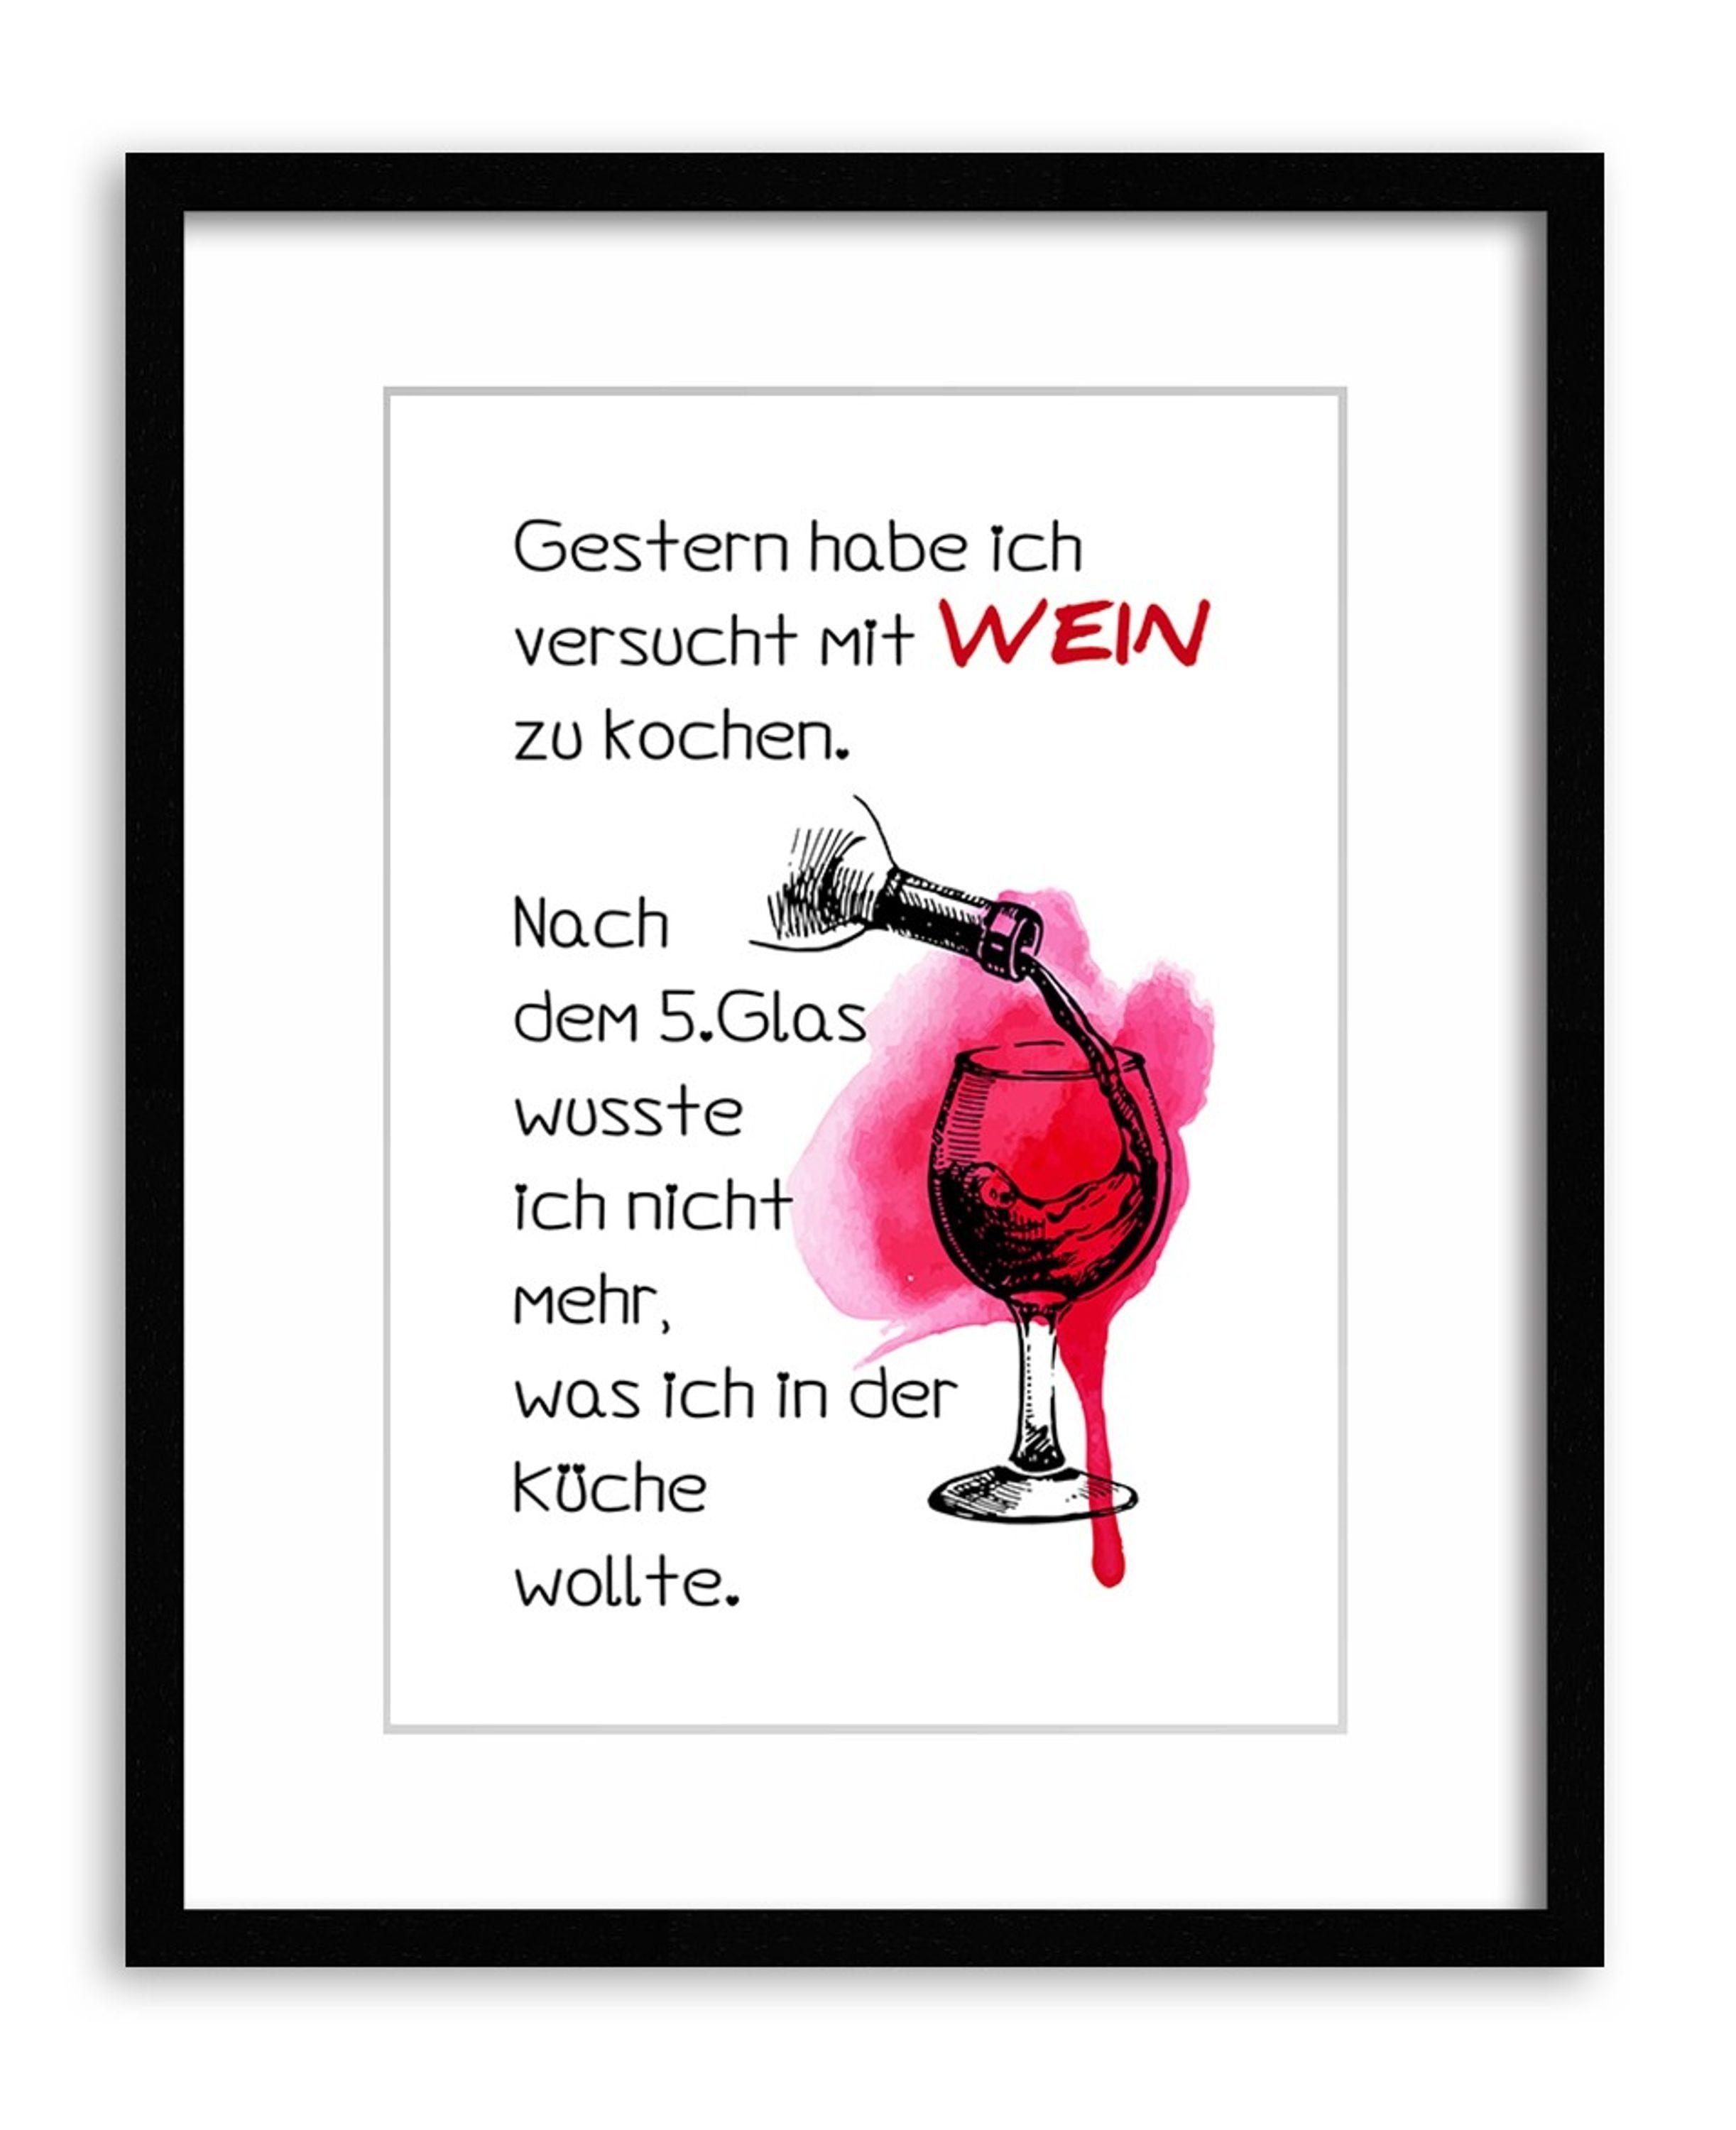 Wandbild Poster Küchenbild Wein, und Poster DinA4 Bild Zitate Spruch Wein lustige mit Küche Sprüche: lustiges artissimo